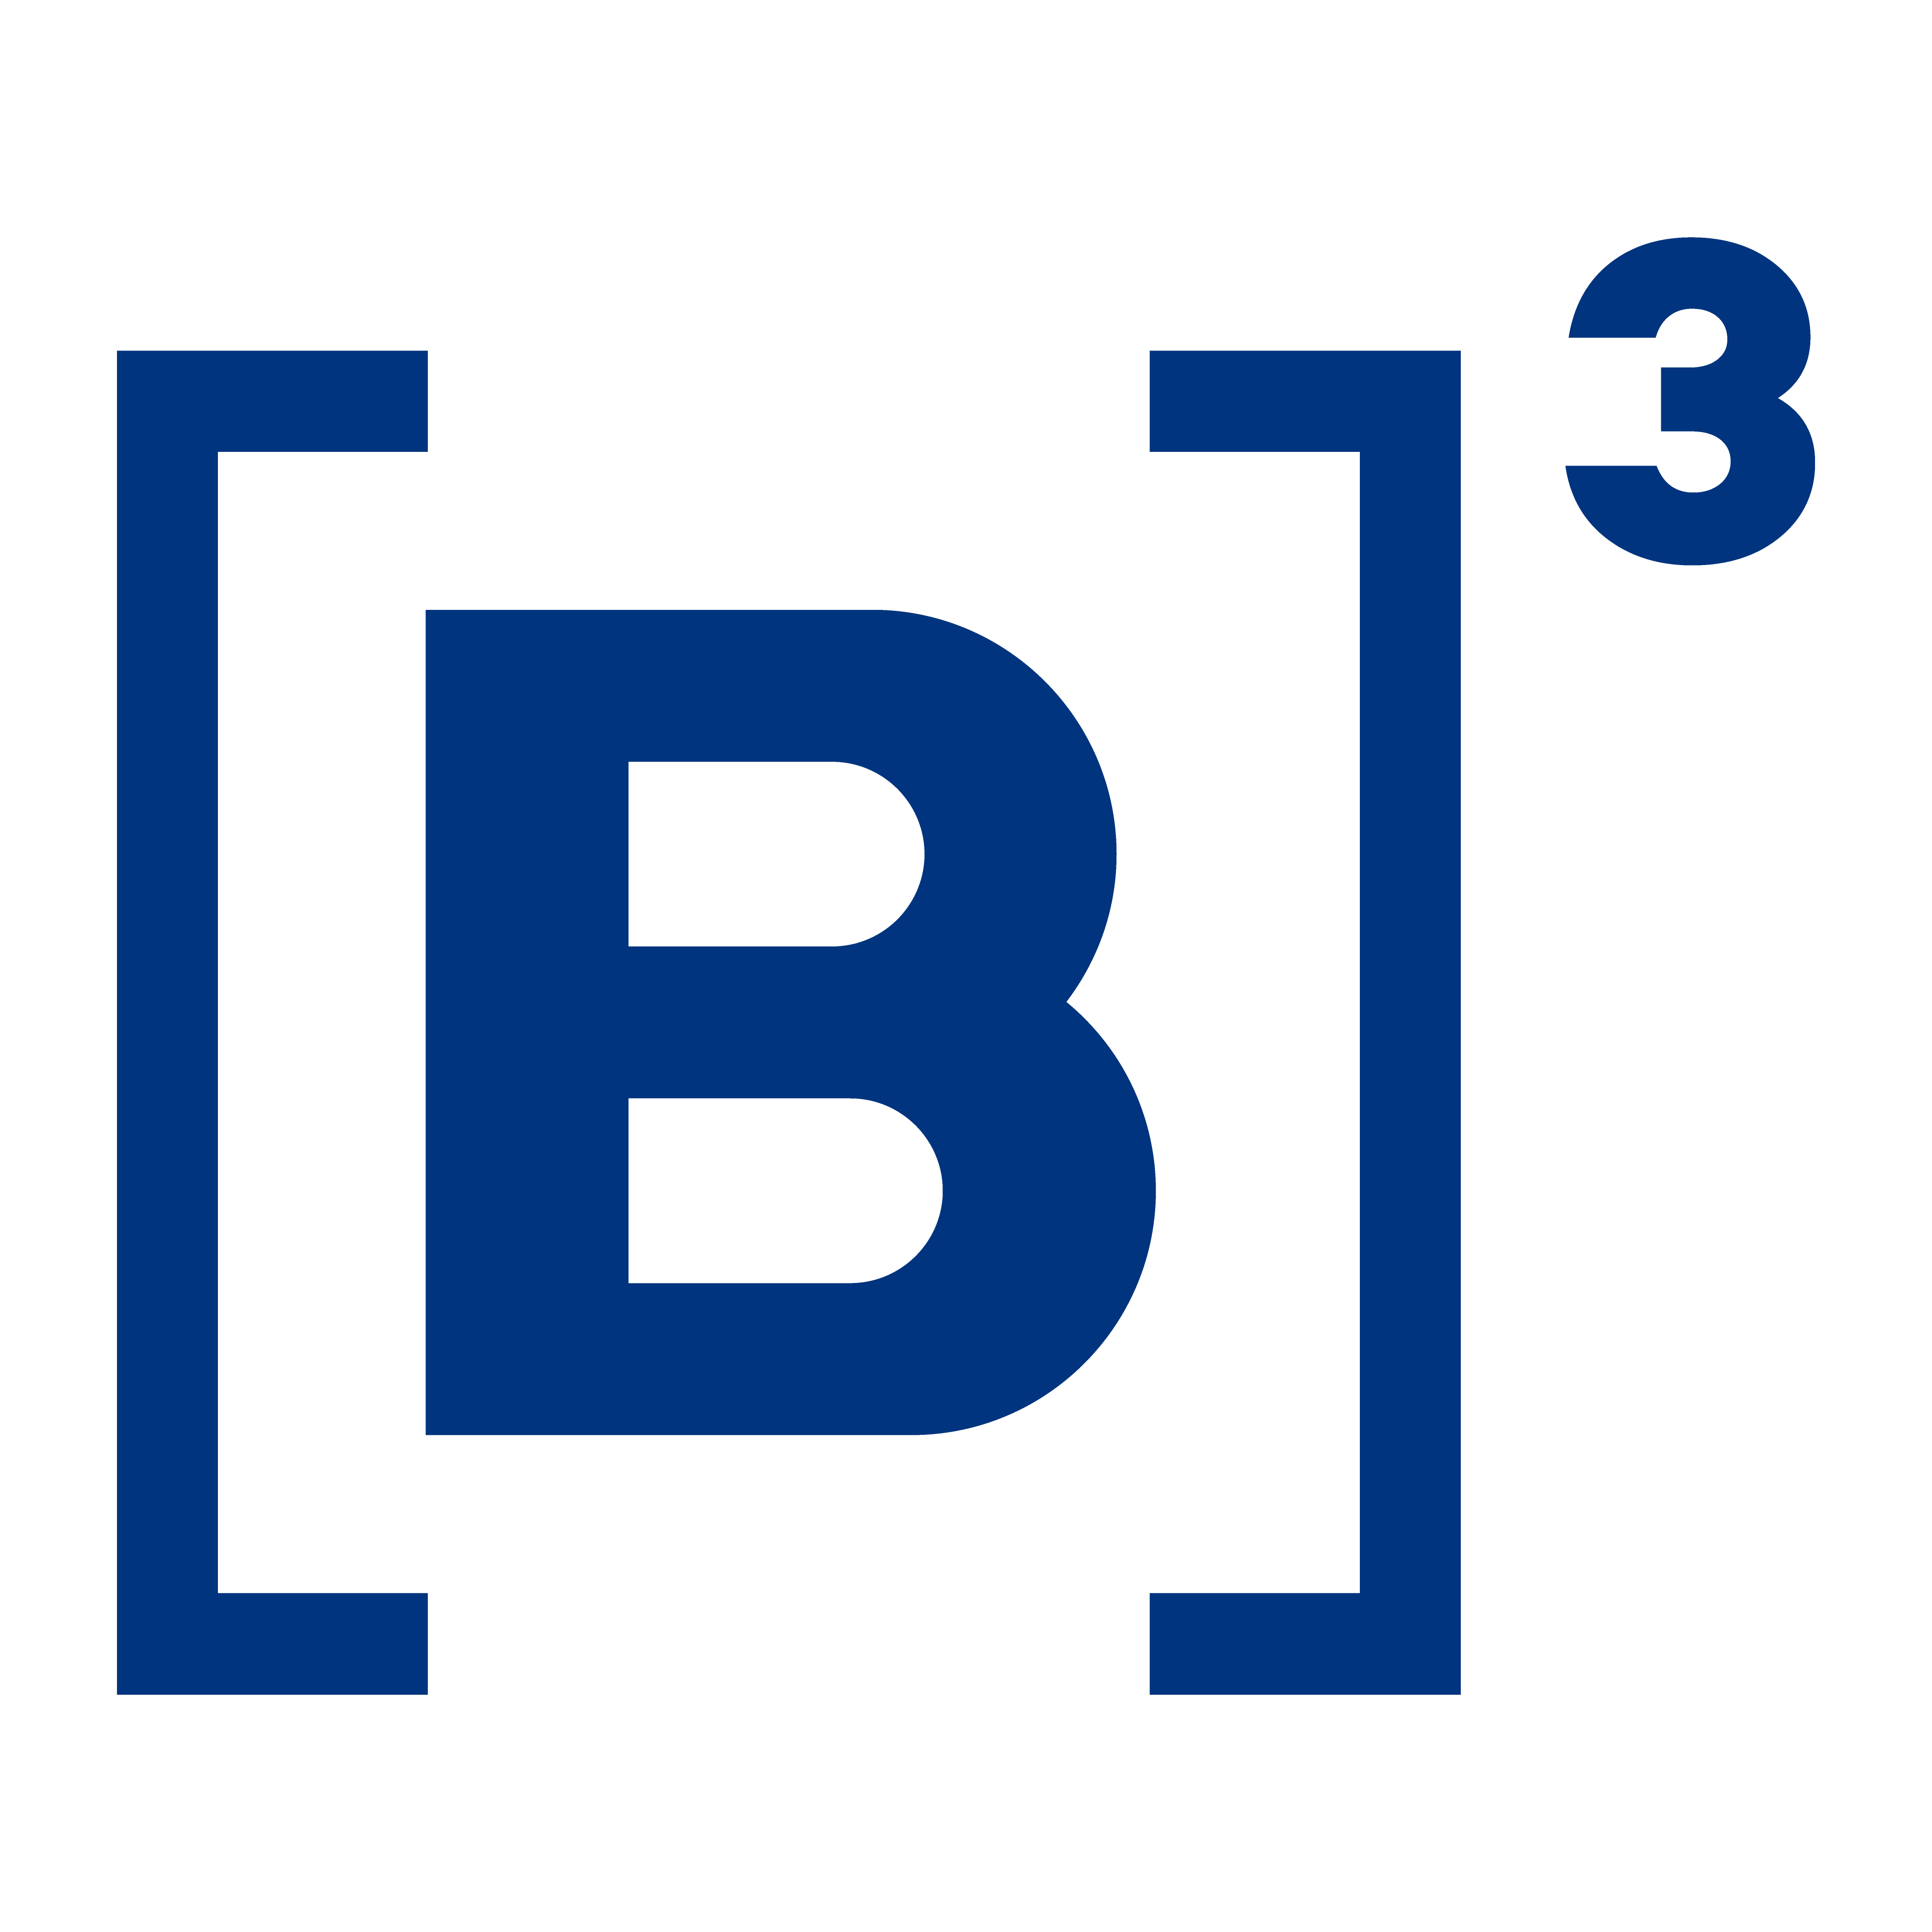 logo b3 icone